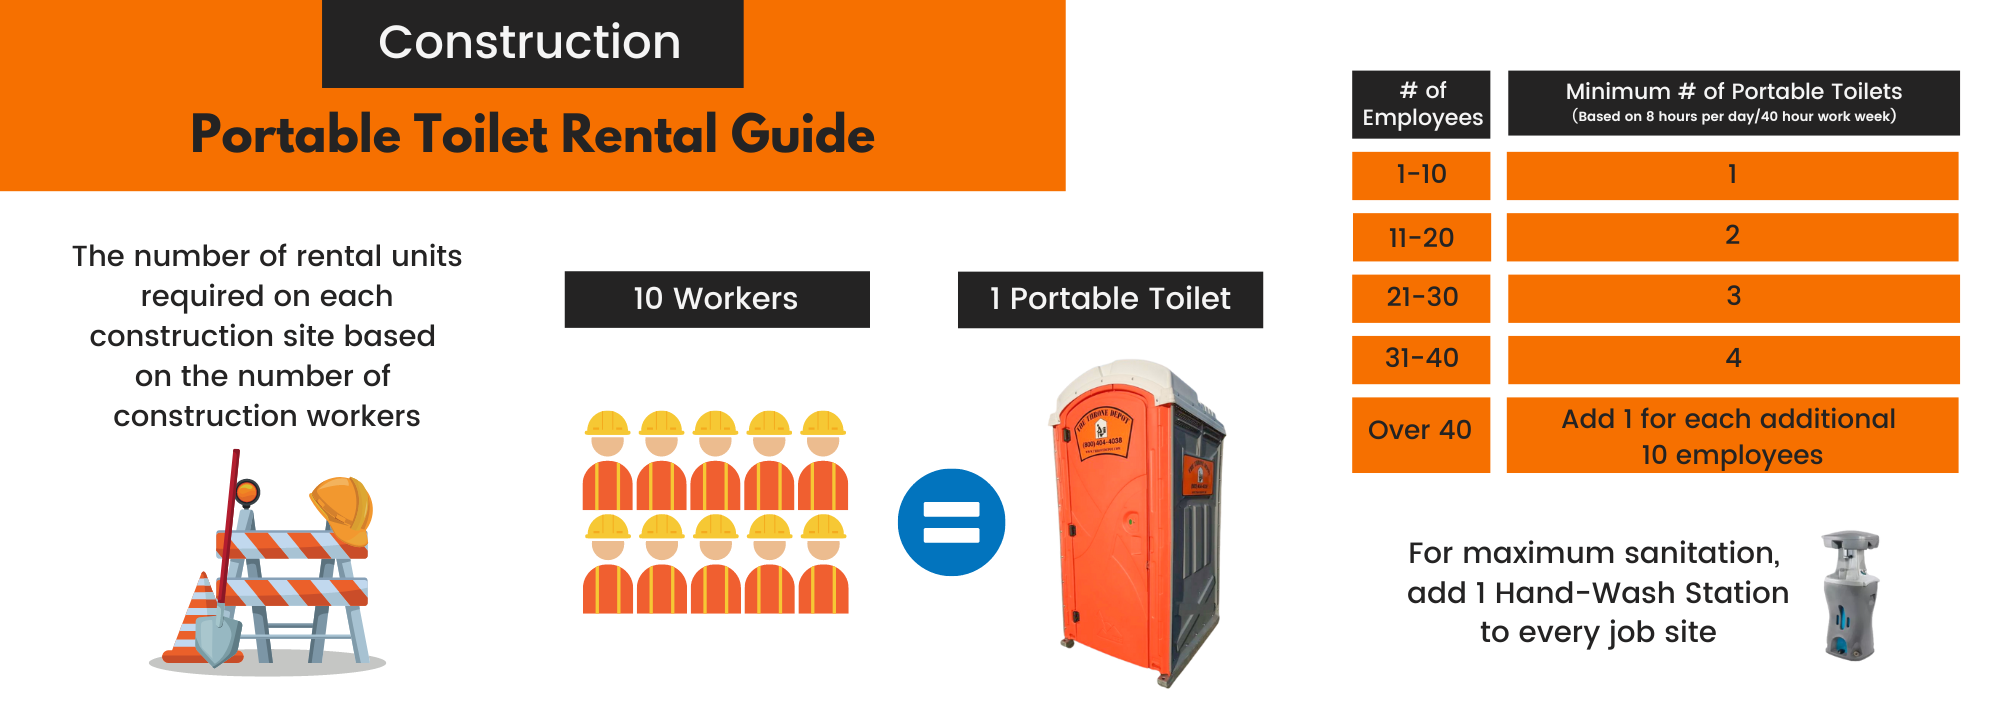 Portable Toilet Rental Guide (Landscape)